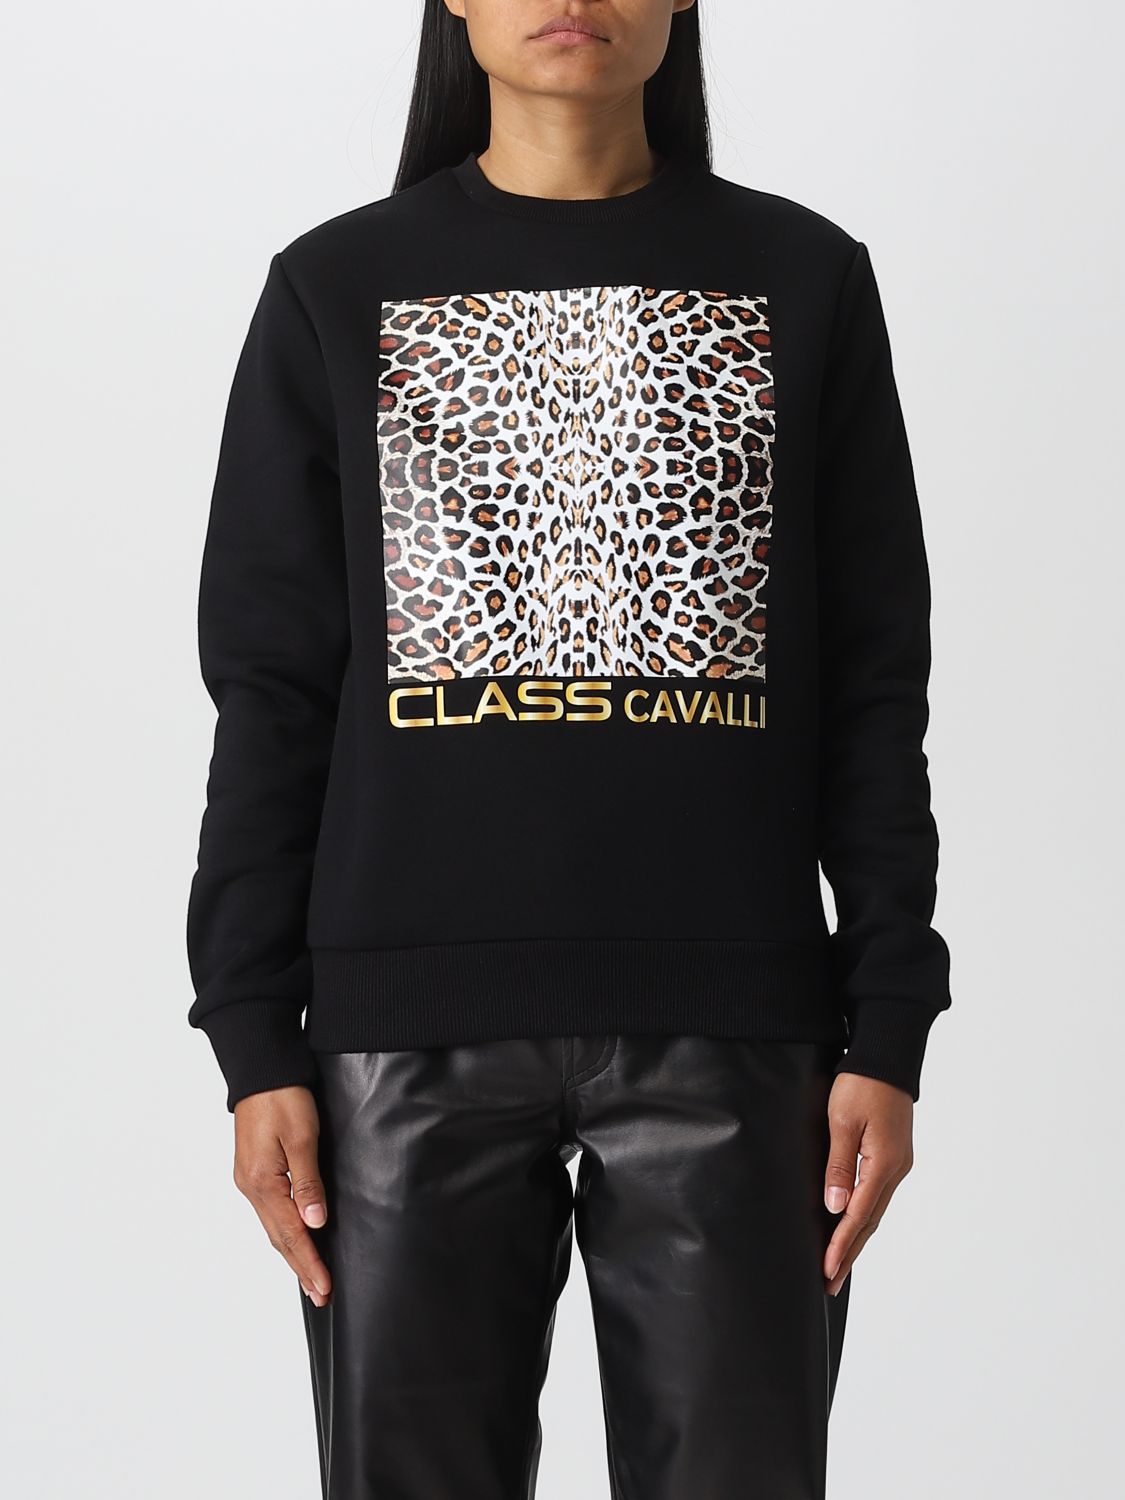 evenwichtig bijtend hack Class Roberto Cavalli Outlet: sweatshirt for woman - Black | Class Roberto  Cavalli sweatshirt PXT65H-CF010 online on GIGLIO.COM